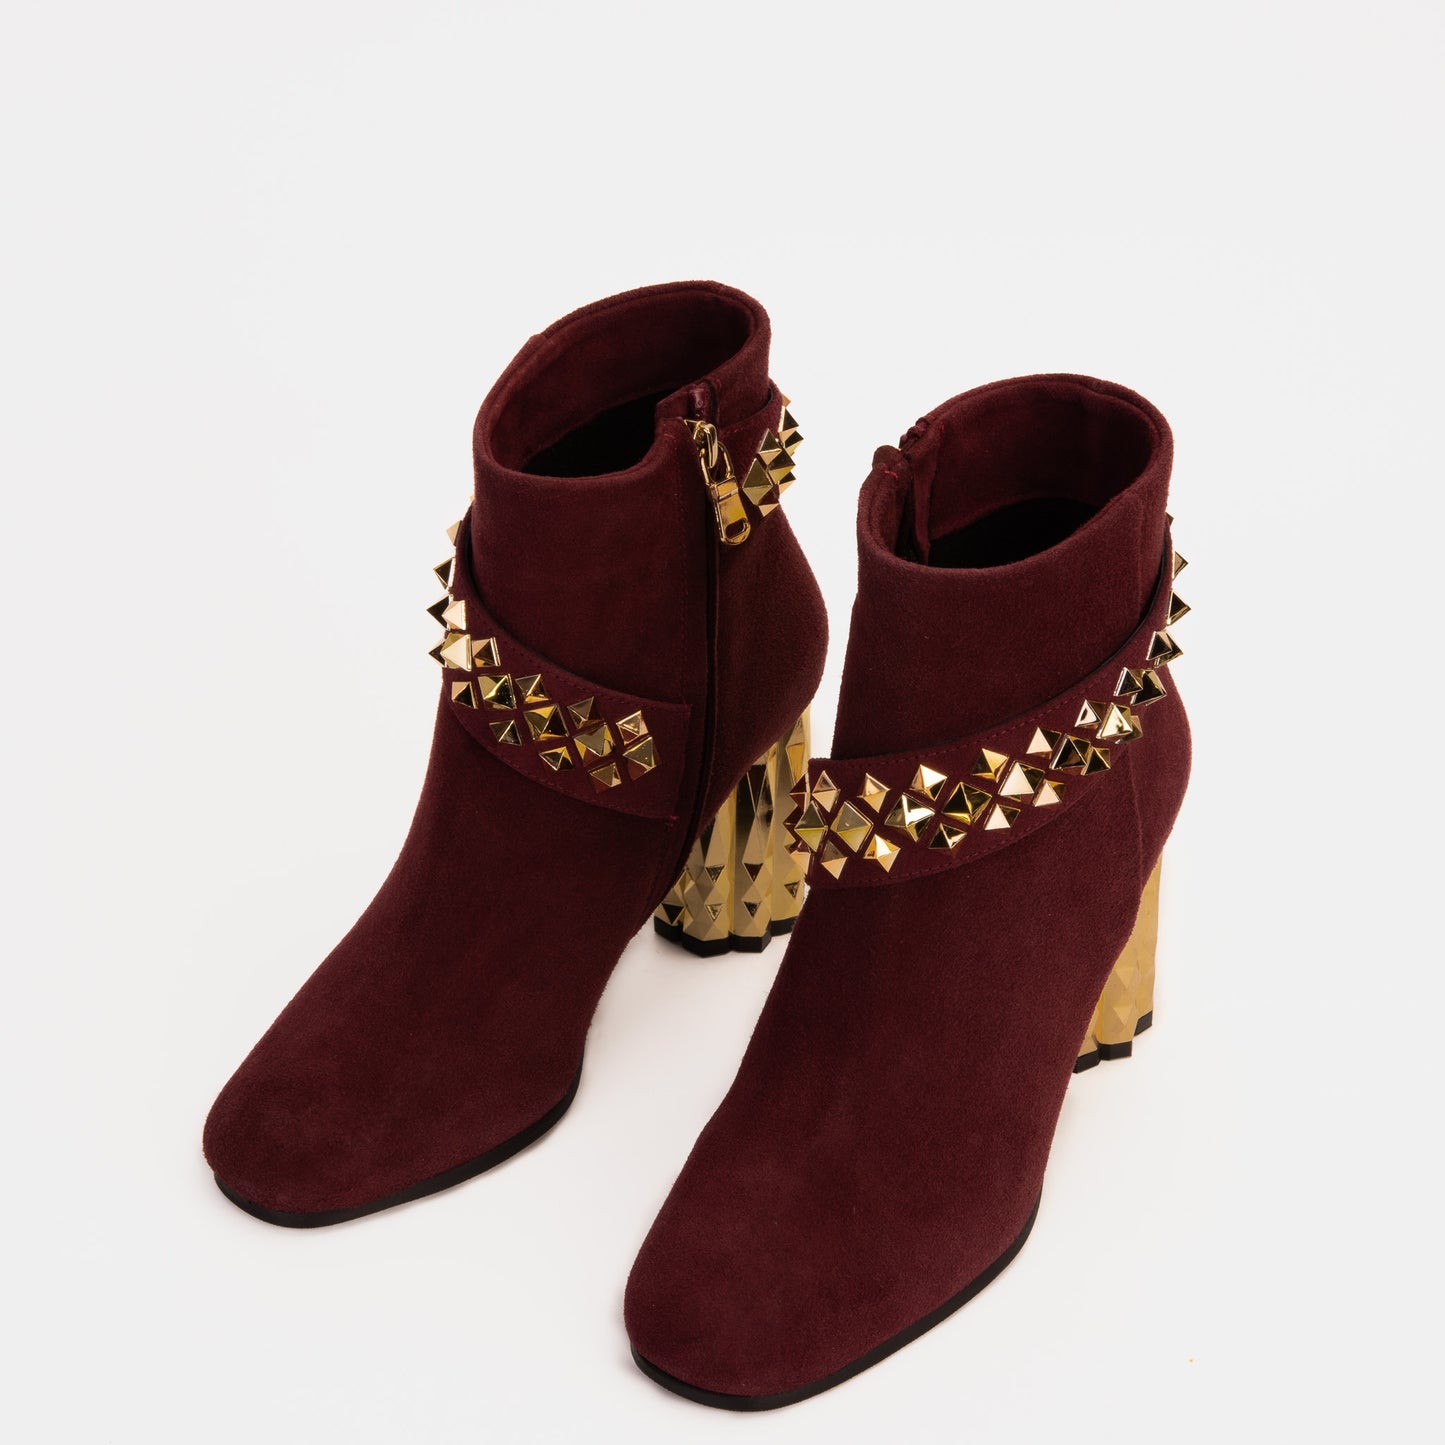 The Metal Burgundy Suede Leather Block Heel Women Boot